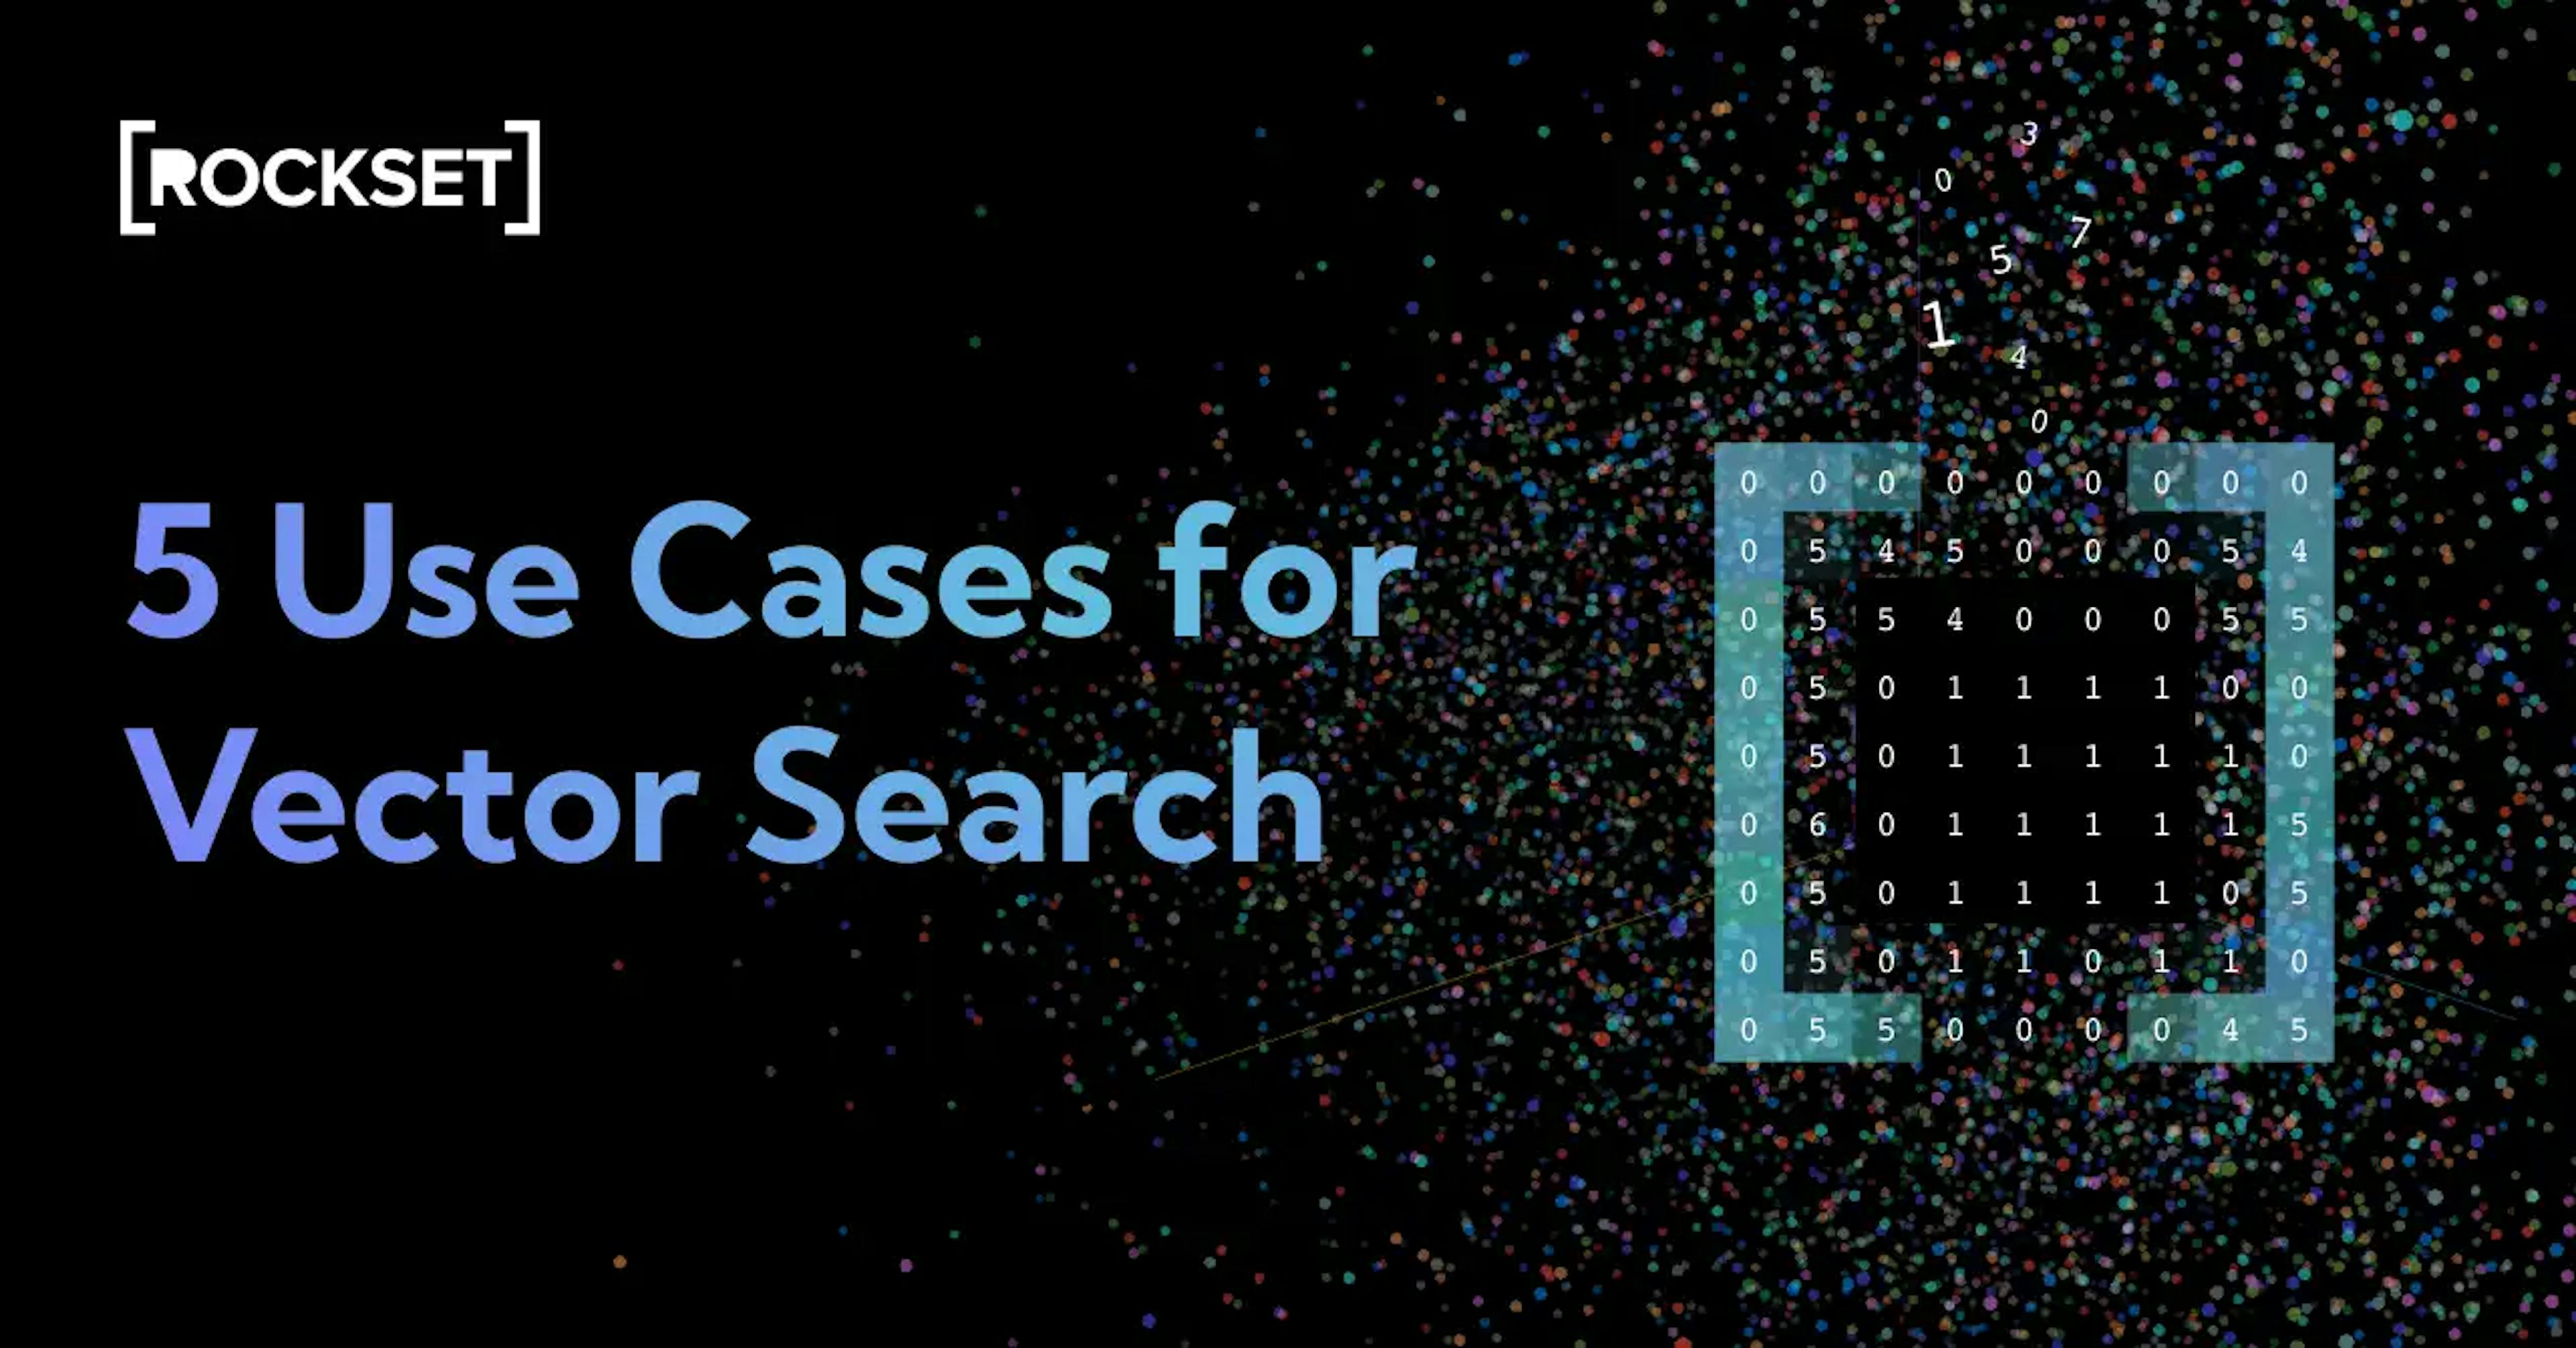 featured image - 주요 기술 회사의 벡터 검색에 대한 5가지 사용 사례 살펴보기